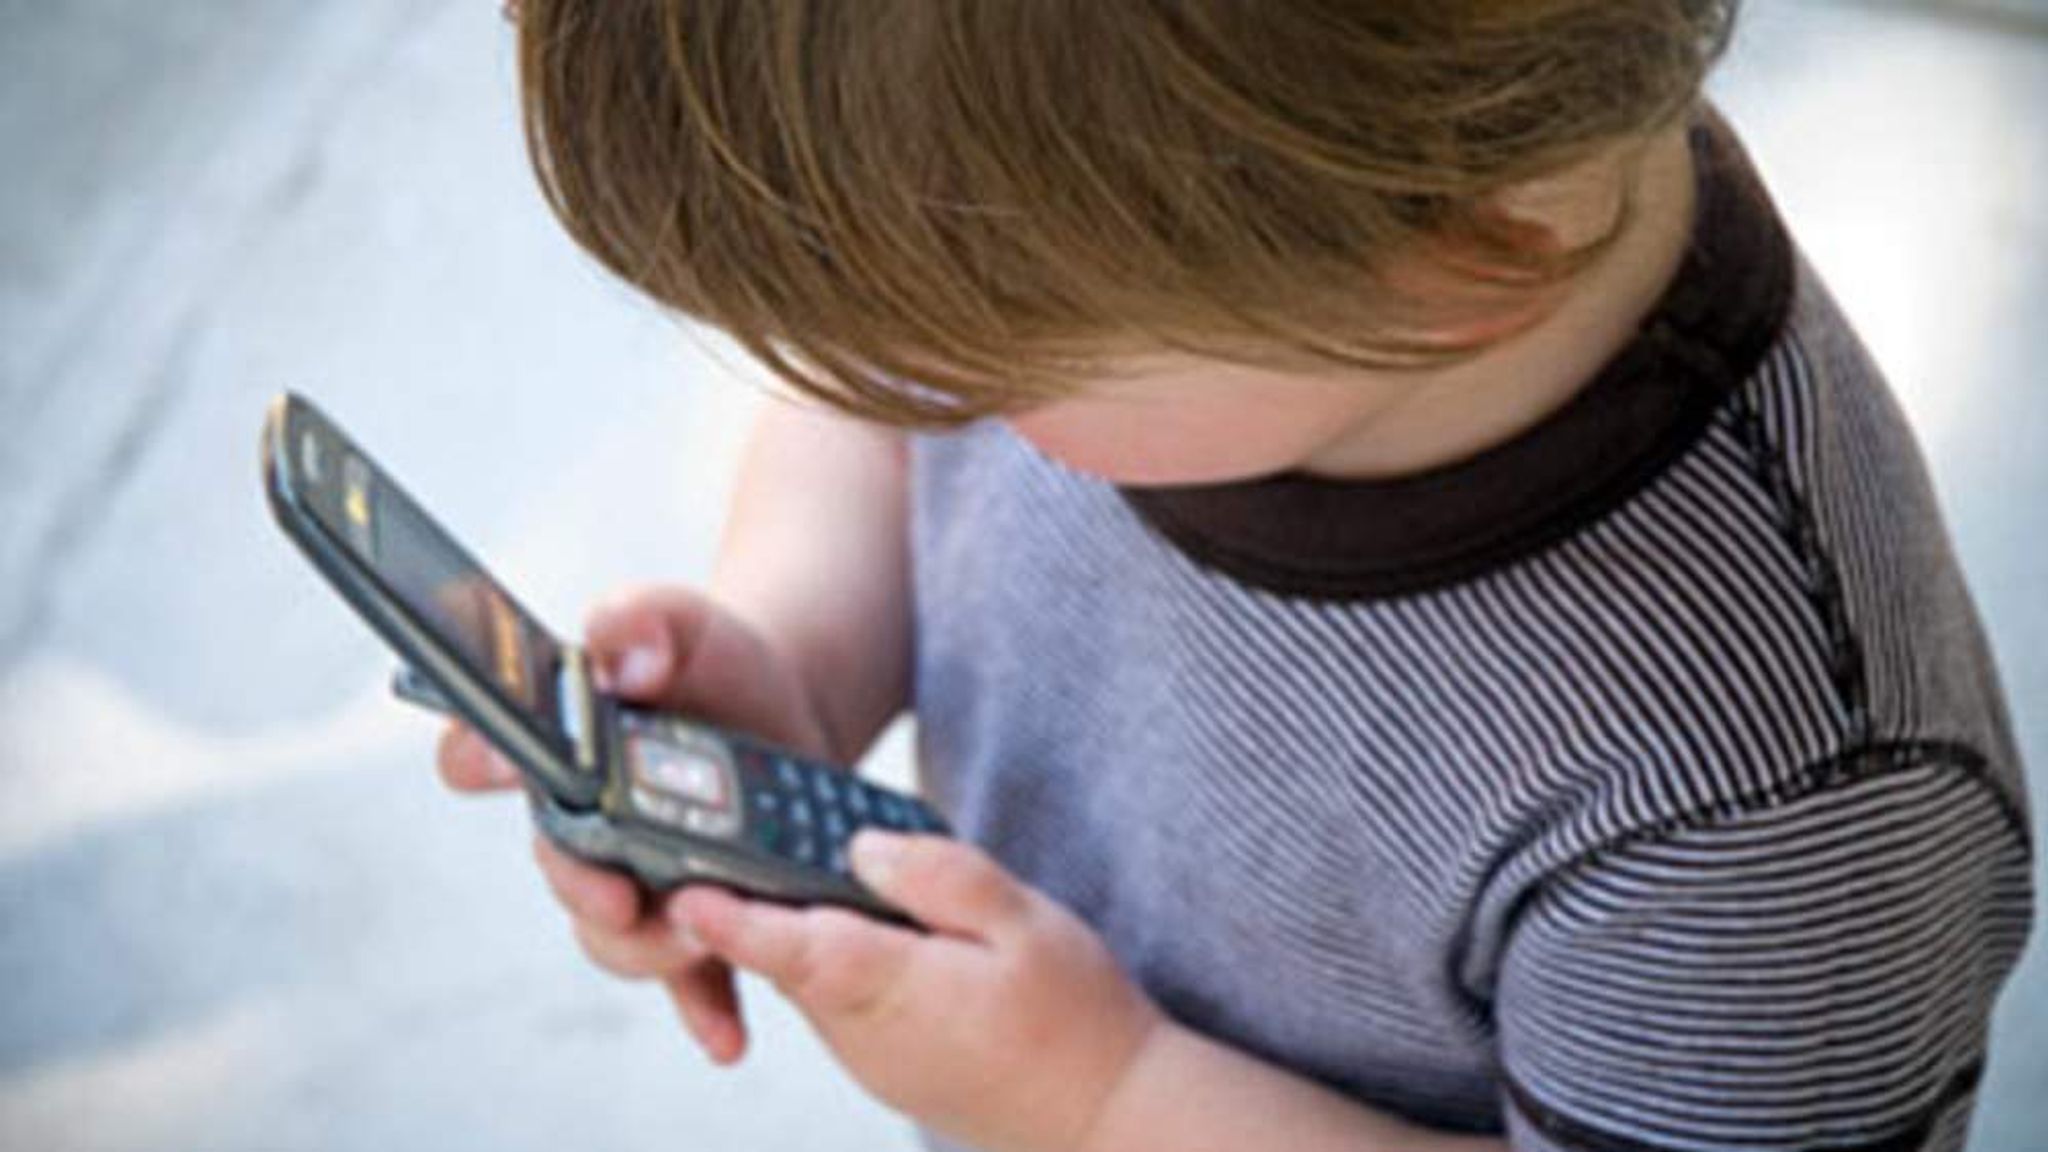 Фото ребенка с телефоном. Мальчик с телефоном. Ребенок с телефоном в руках. Подросток с телефоном. Кнопочный телефон для ребенка.